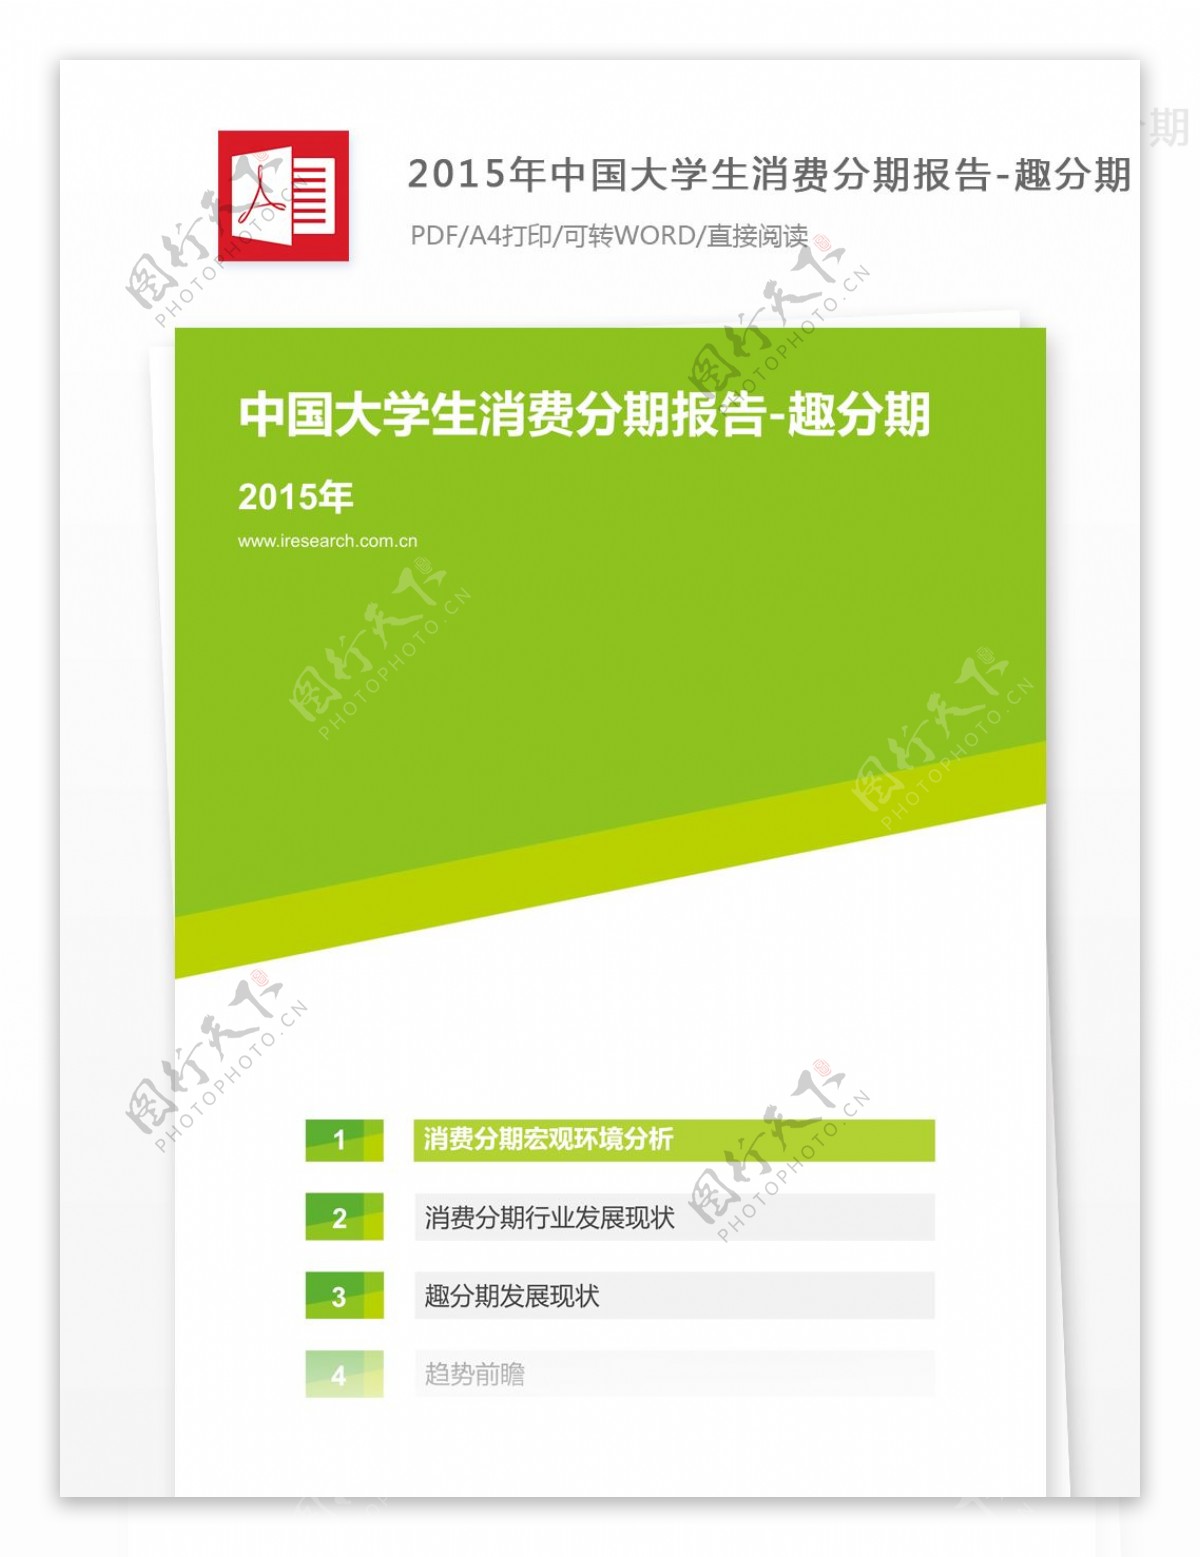 2015年中国大学生消费分期报告